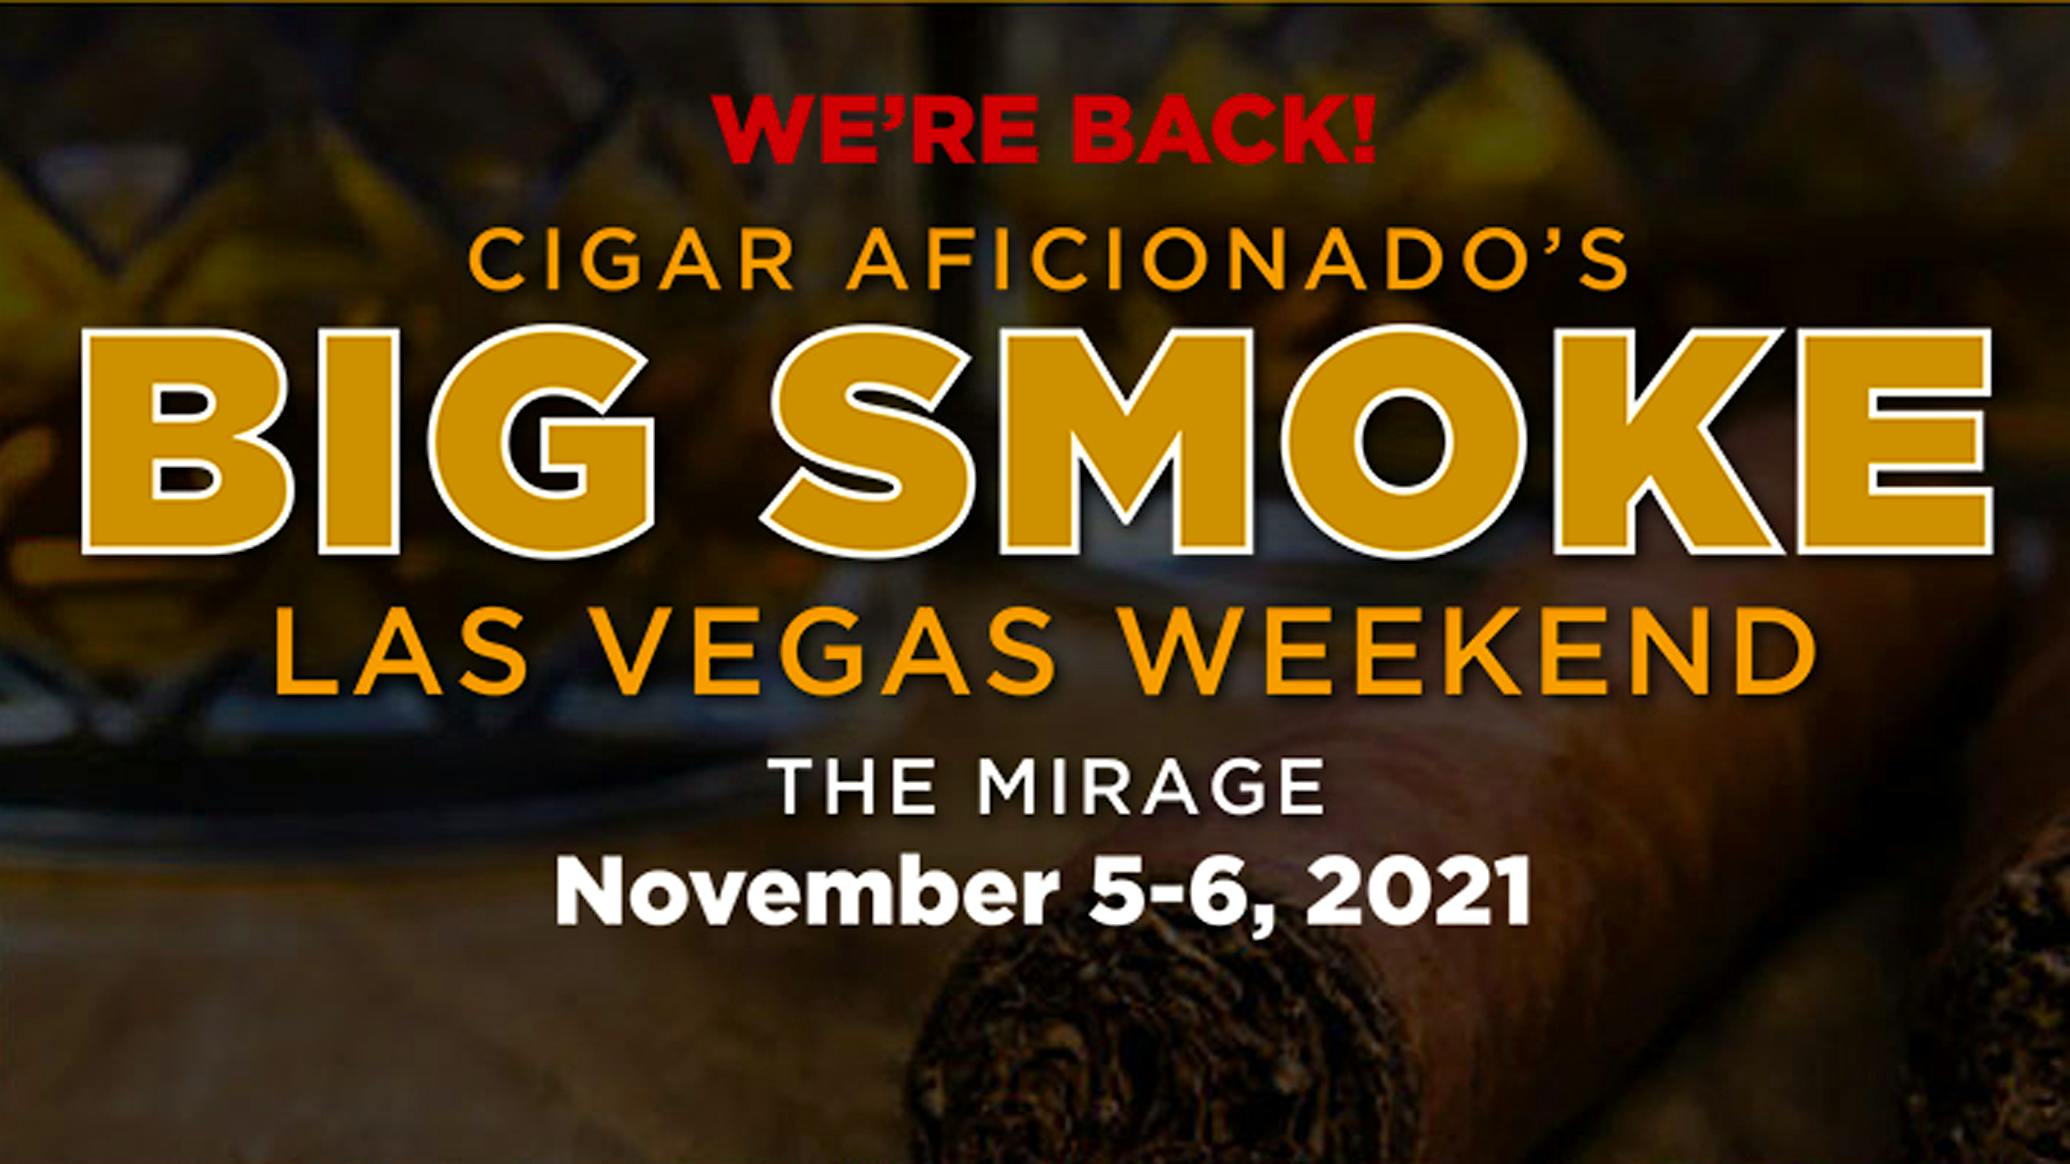 Big Smoke Las Vegas is Back Tickets On Sale Now Cigar Aficionado